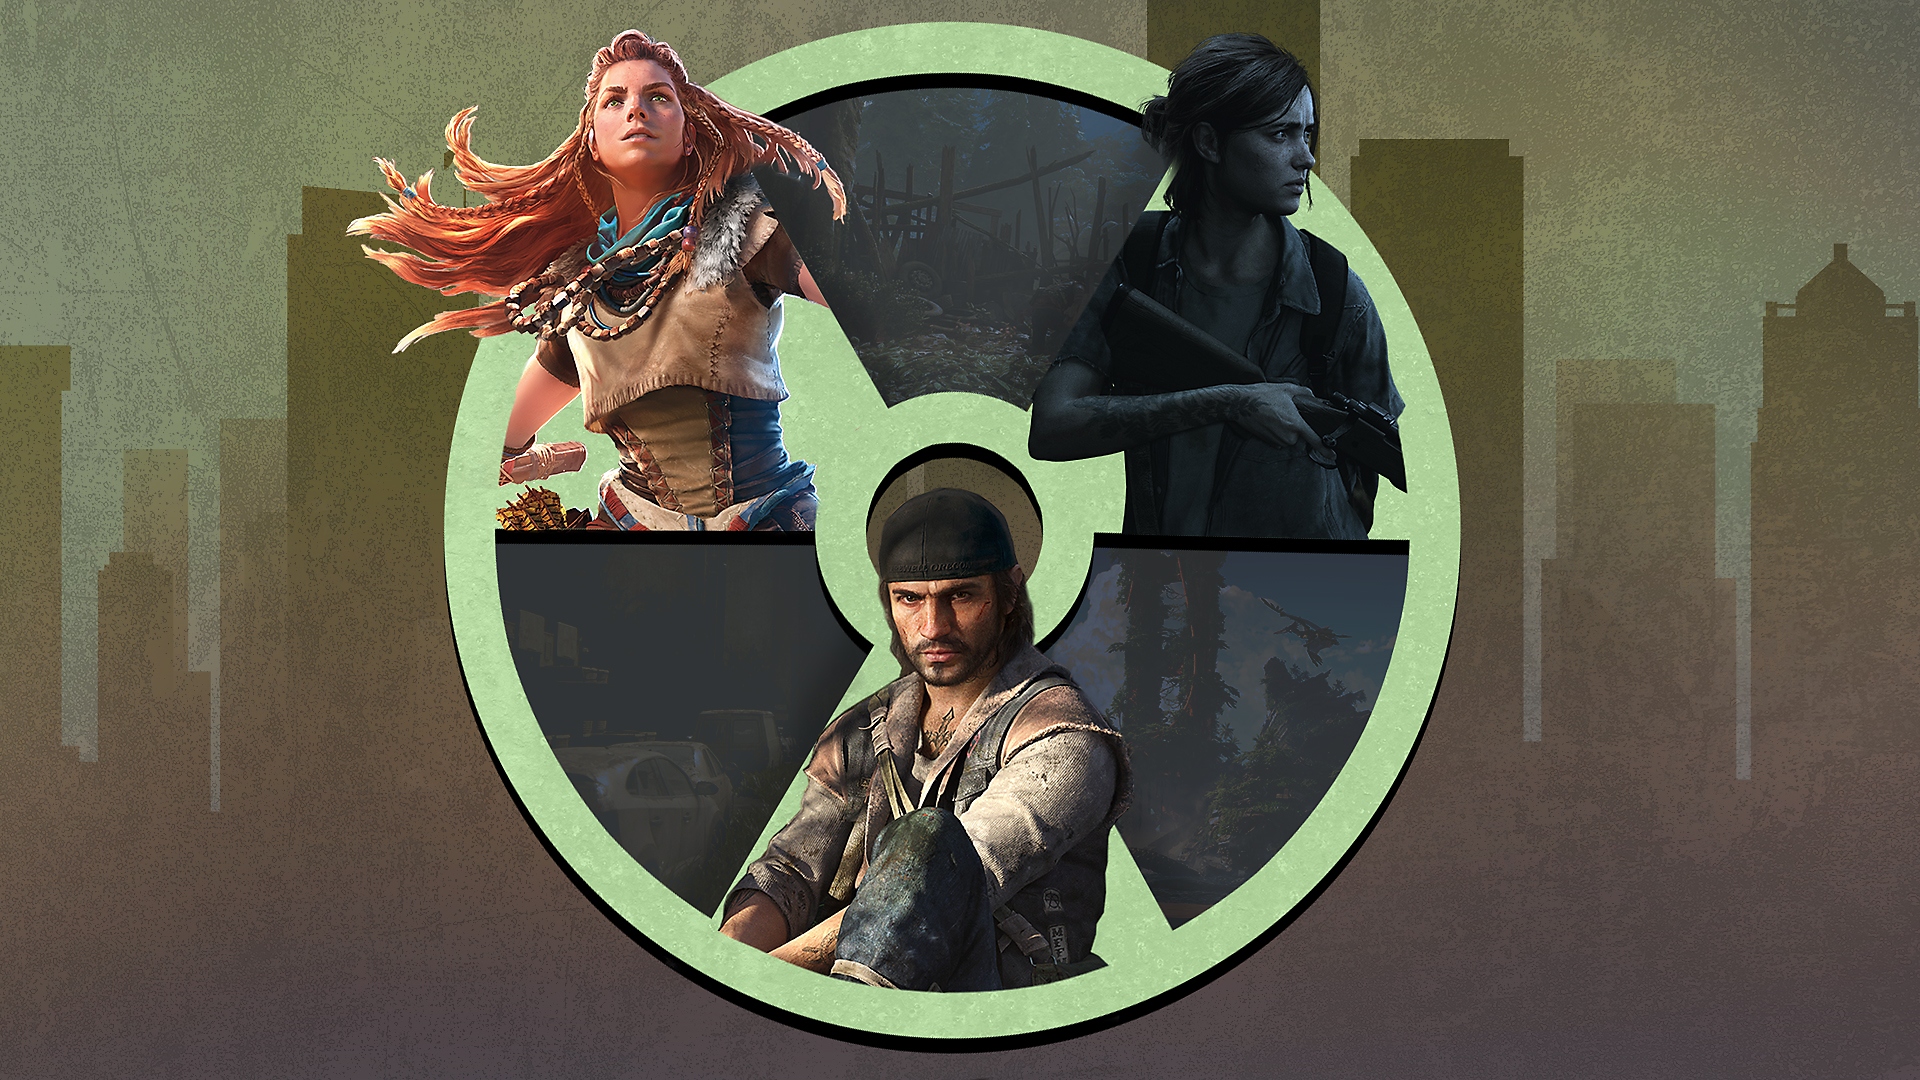 Grafika promująca najlepsze postapokaliptyczne gry na PS4 i PS5, która przedstawia The Last of Us Part II, Horizon Forbidden West i Days Gone.